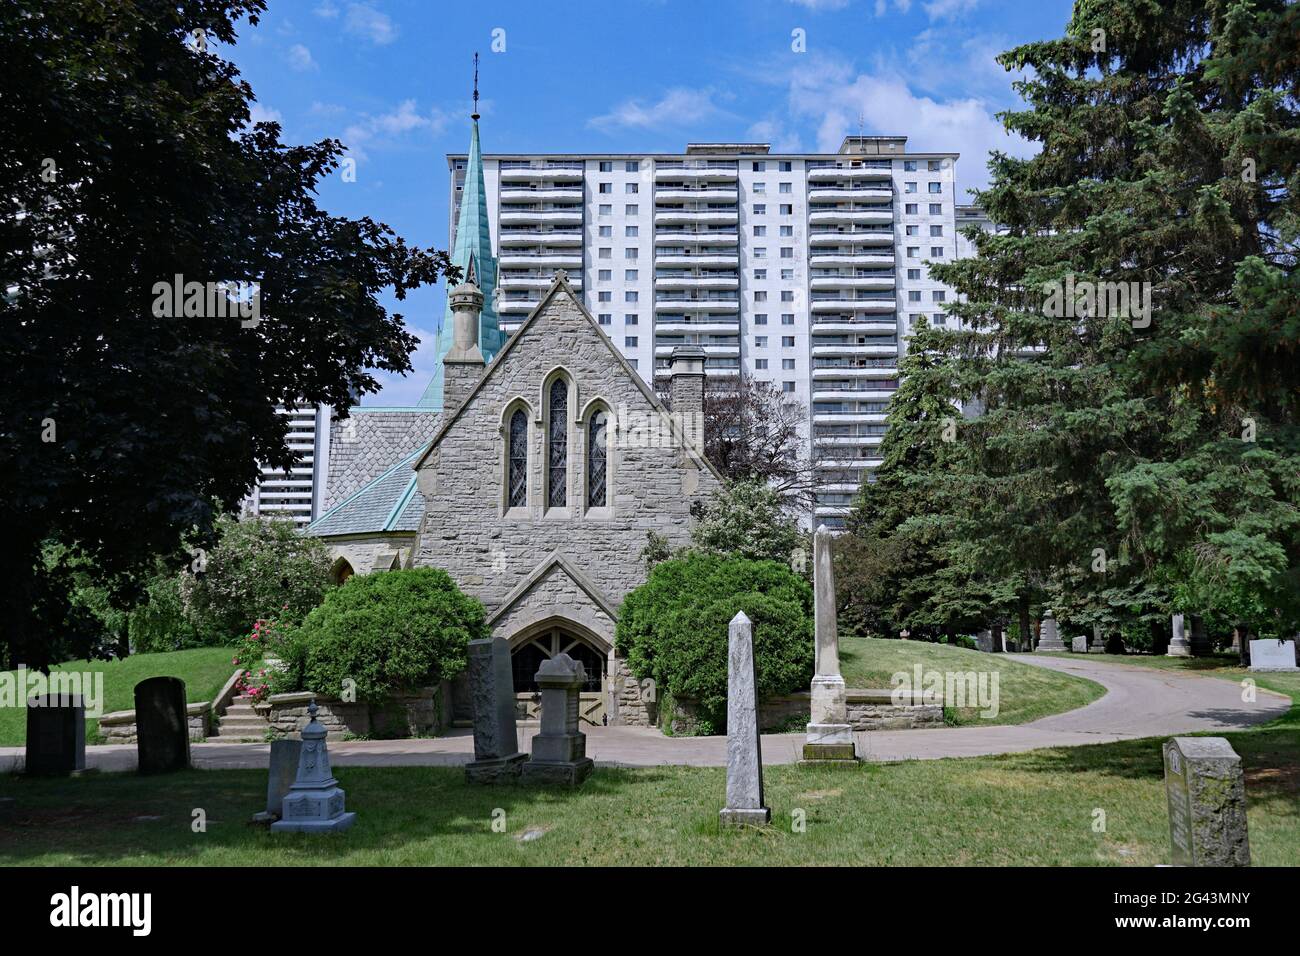 Une chapelle gothique victorienne, St. James The Less, construite en 1860 dans ce qui était une zone rurale, est maintenant entourée d'immeubles d'appartements modernes à Toronto Banque D'Images